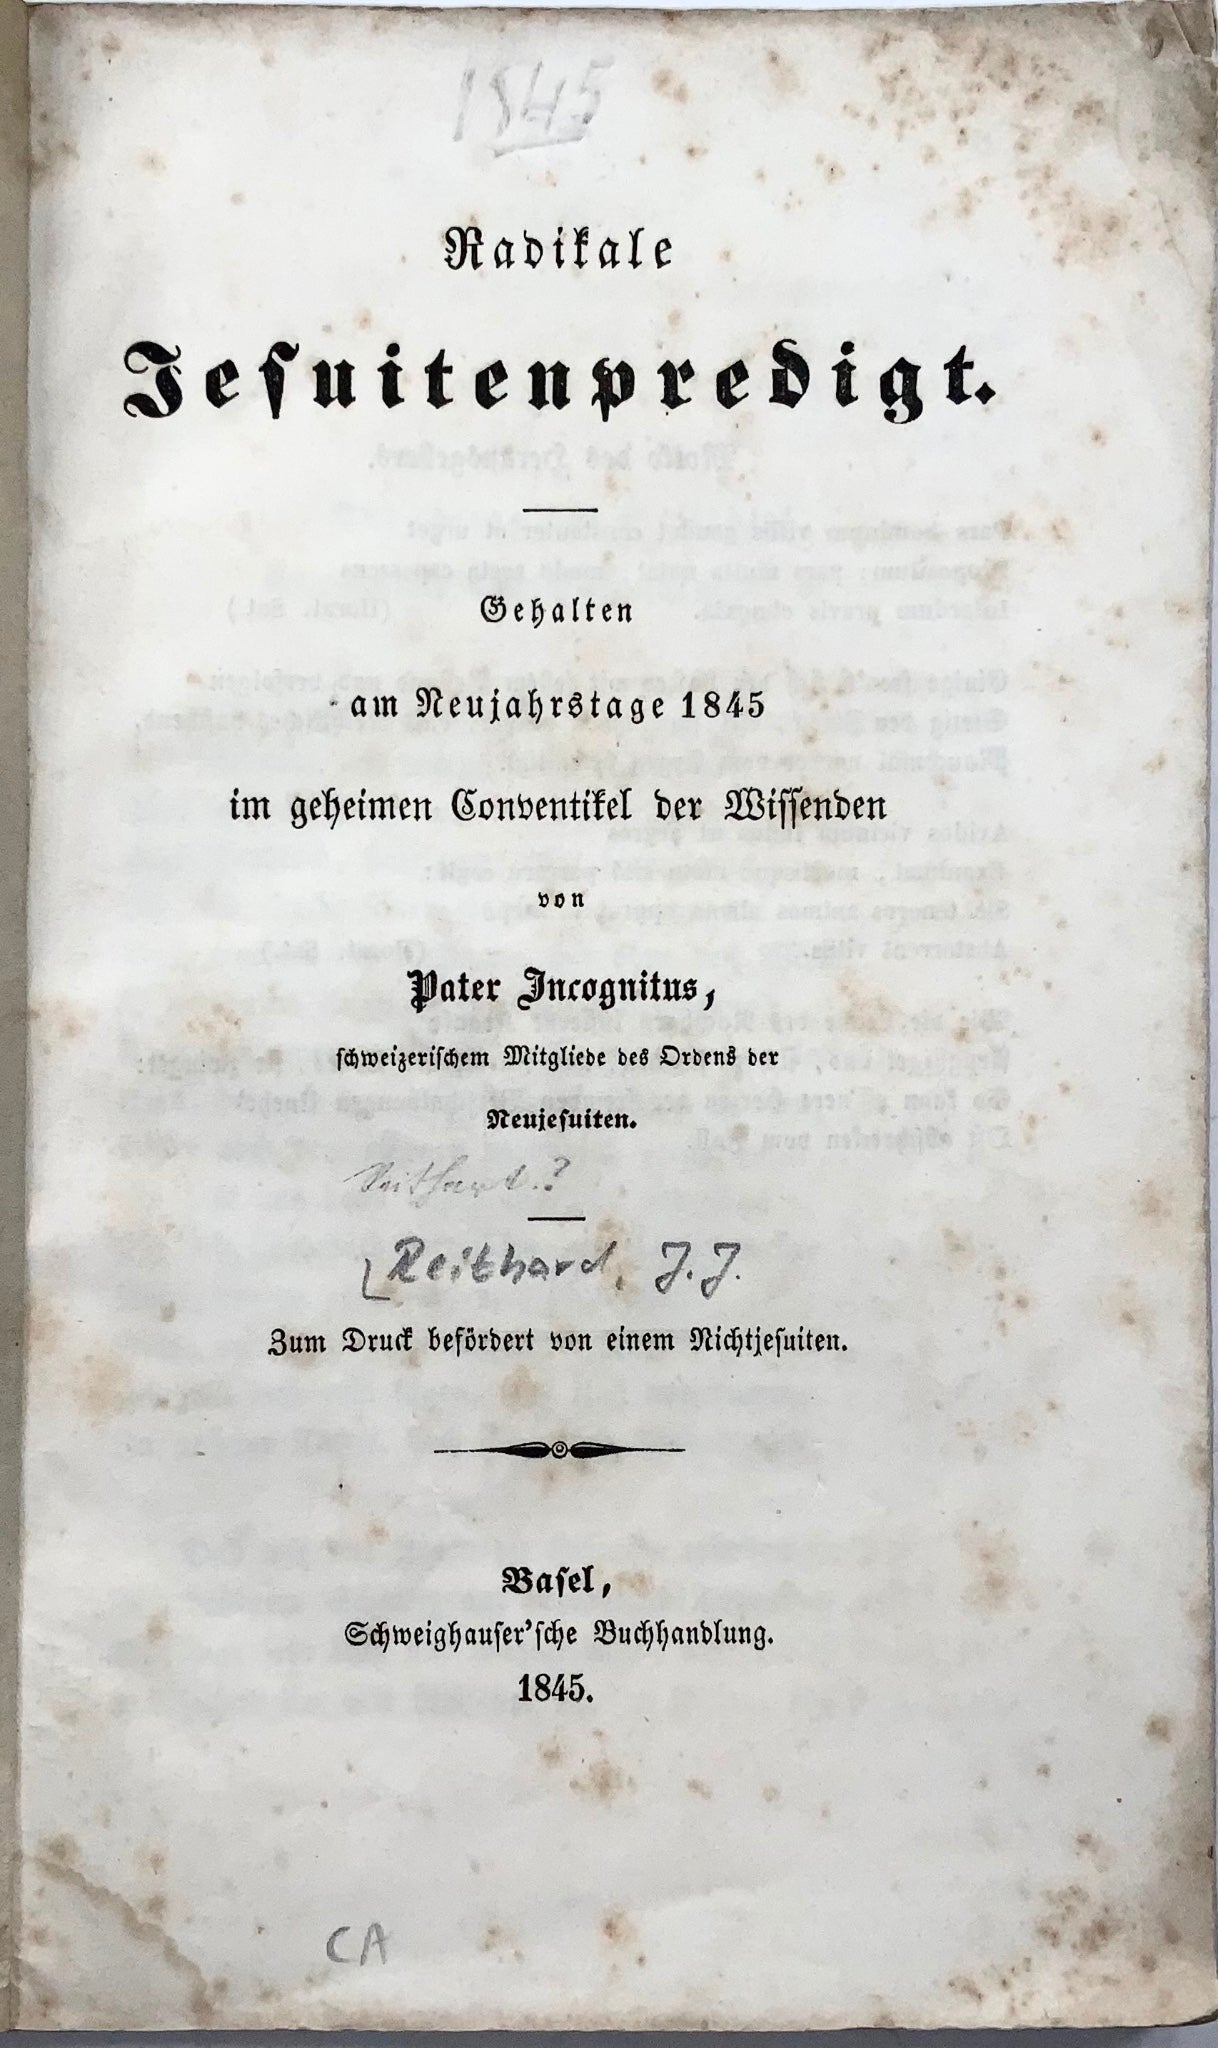 1845 Opuscolo radicale svizzero antigesuita, copertina satirica, "Padre Incognito"